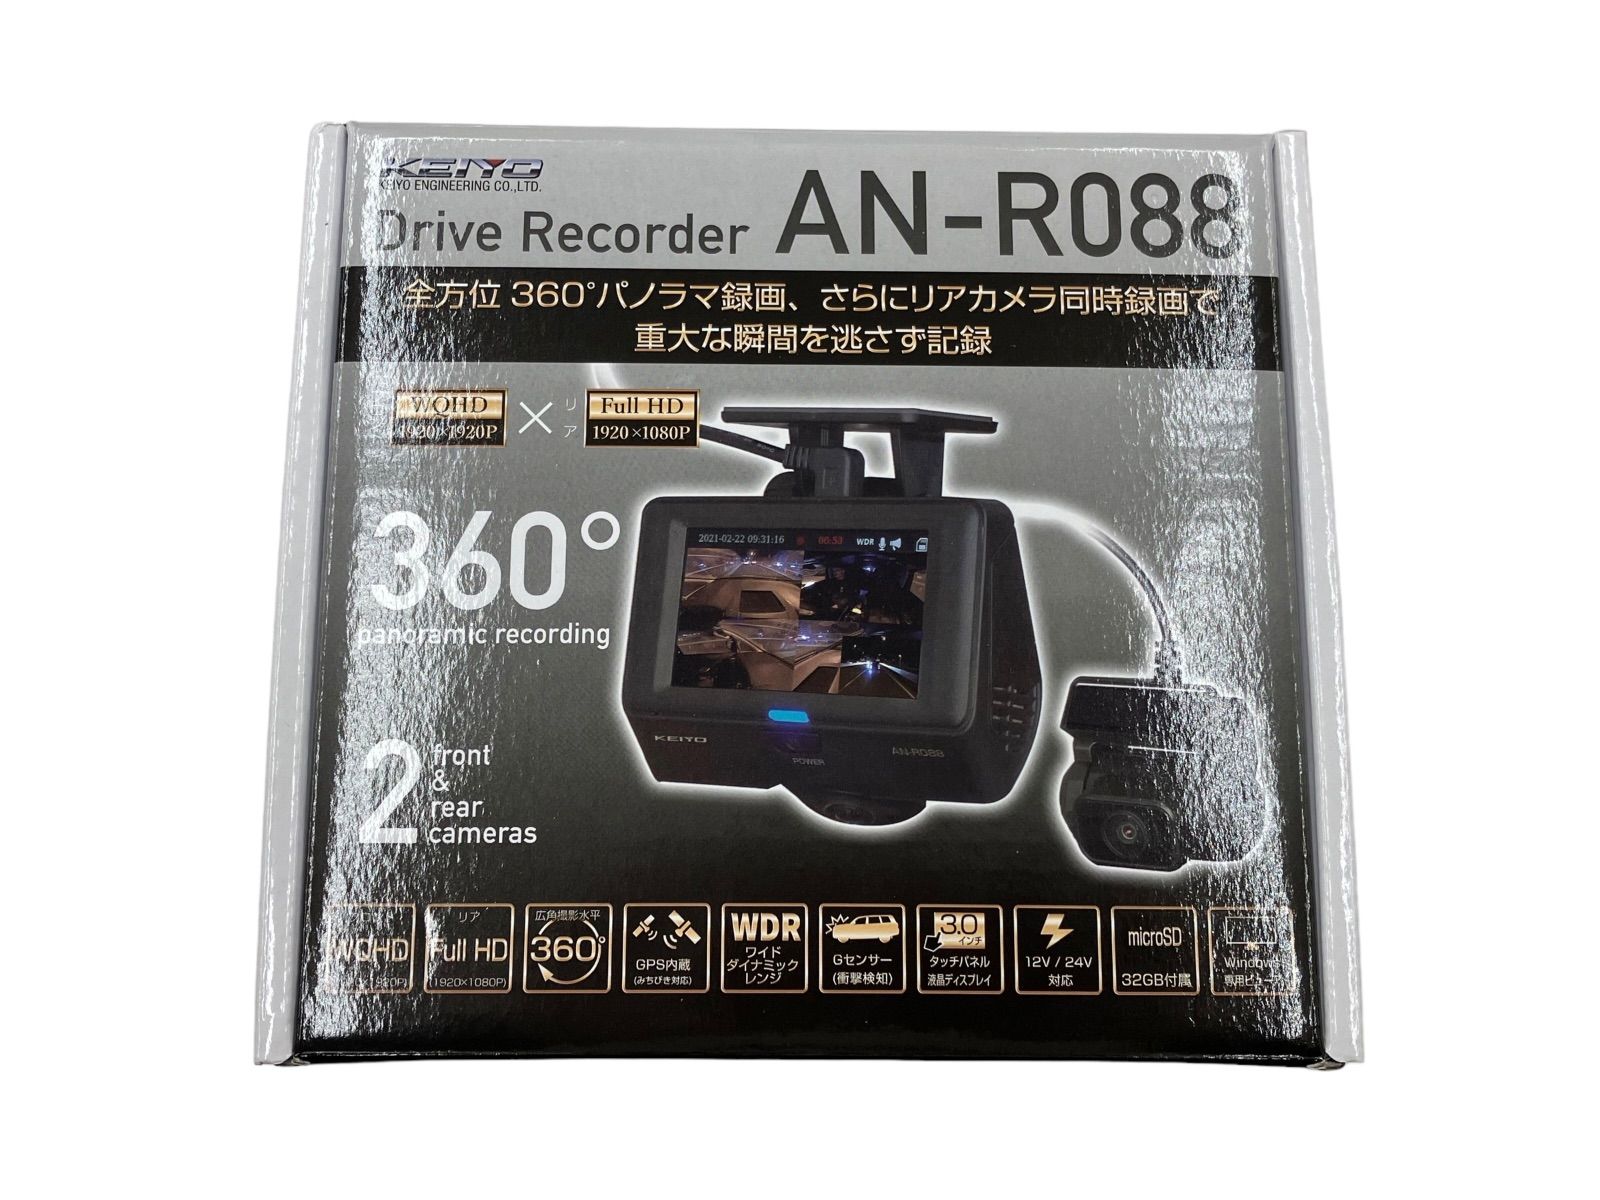 KEIYO ドライブレコーダー AN-R088